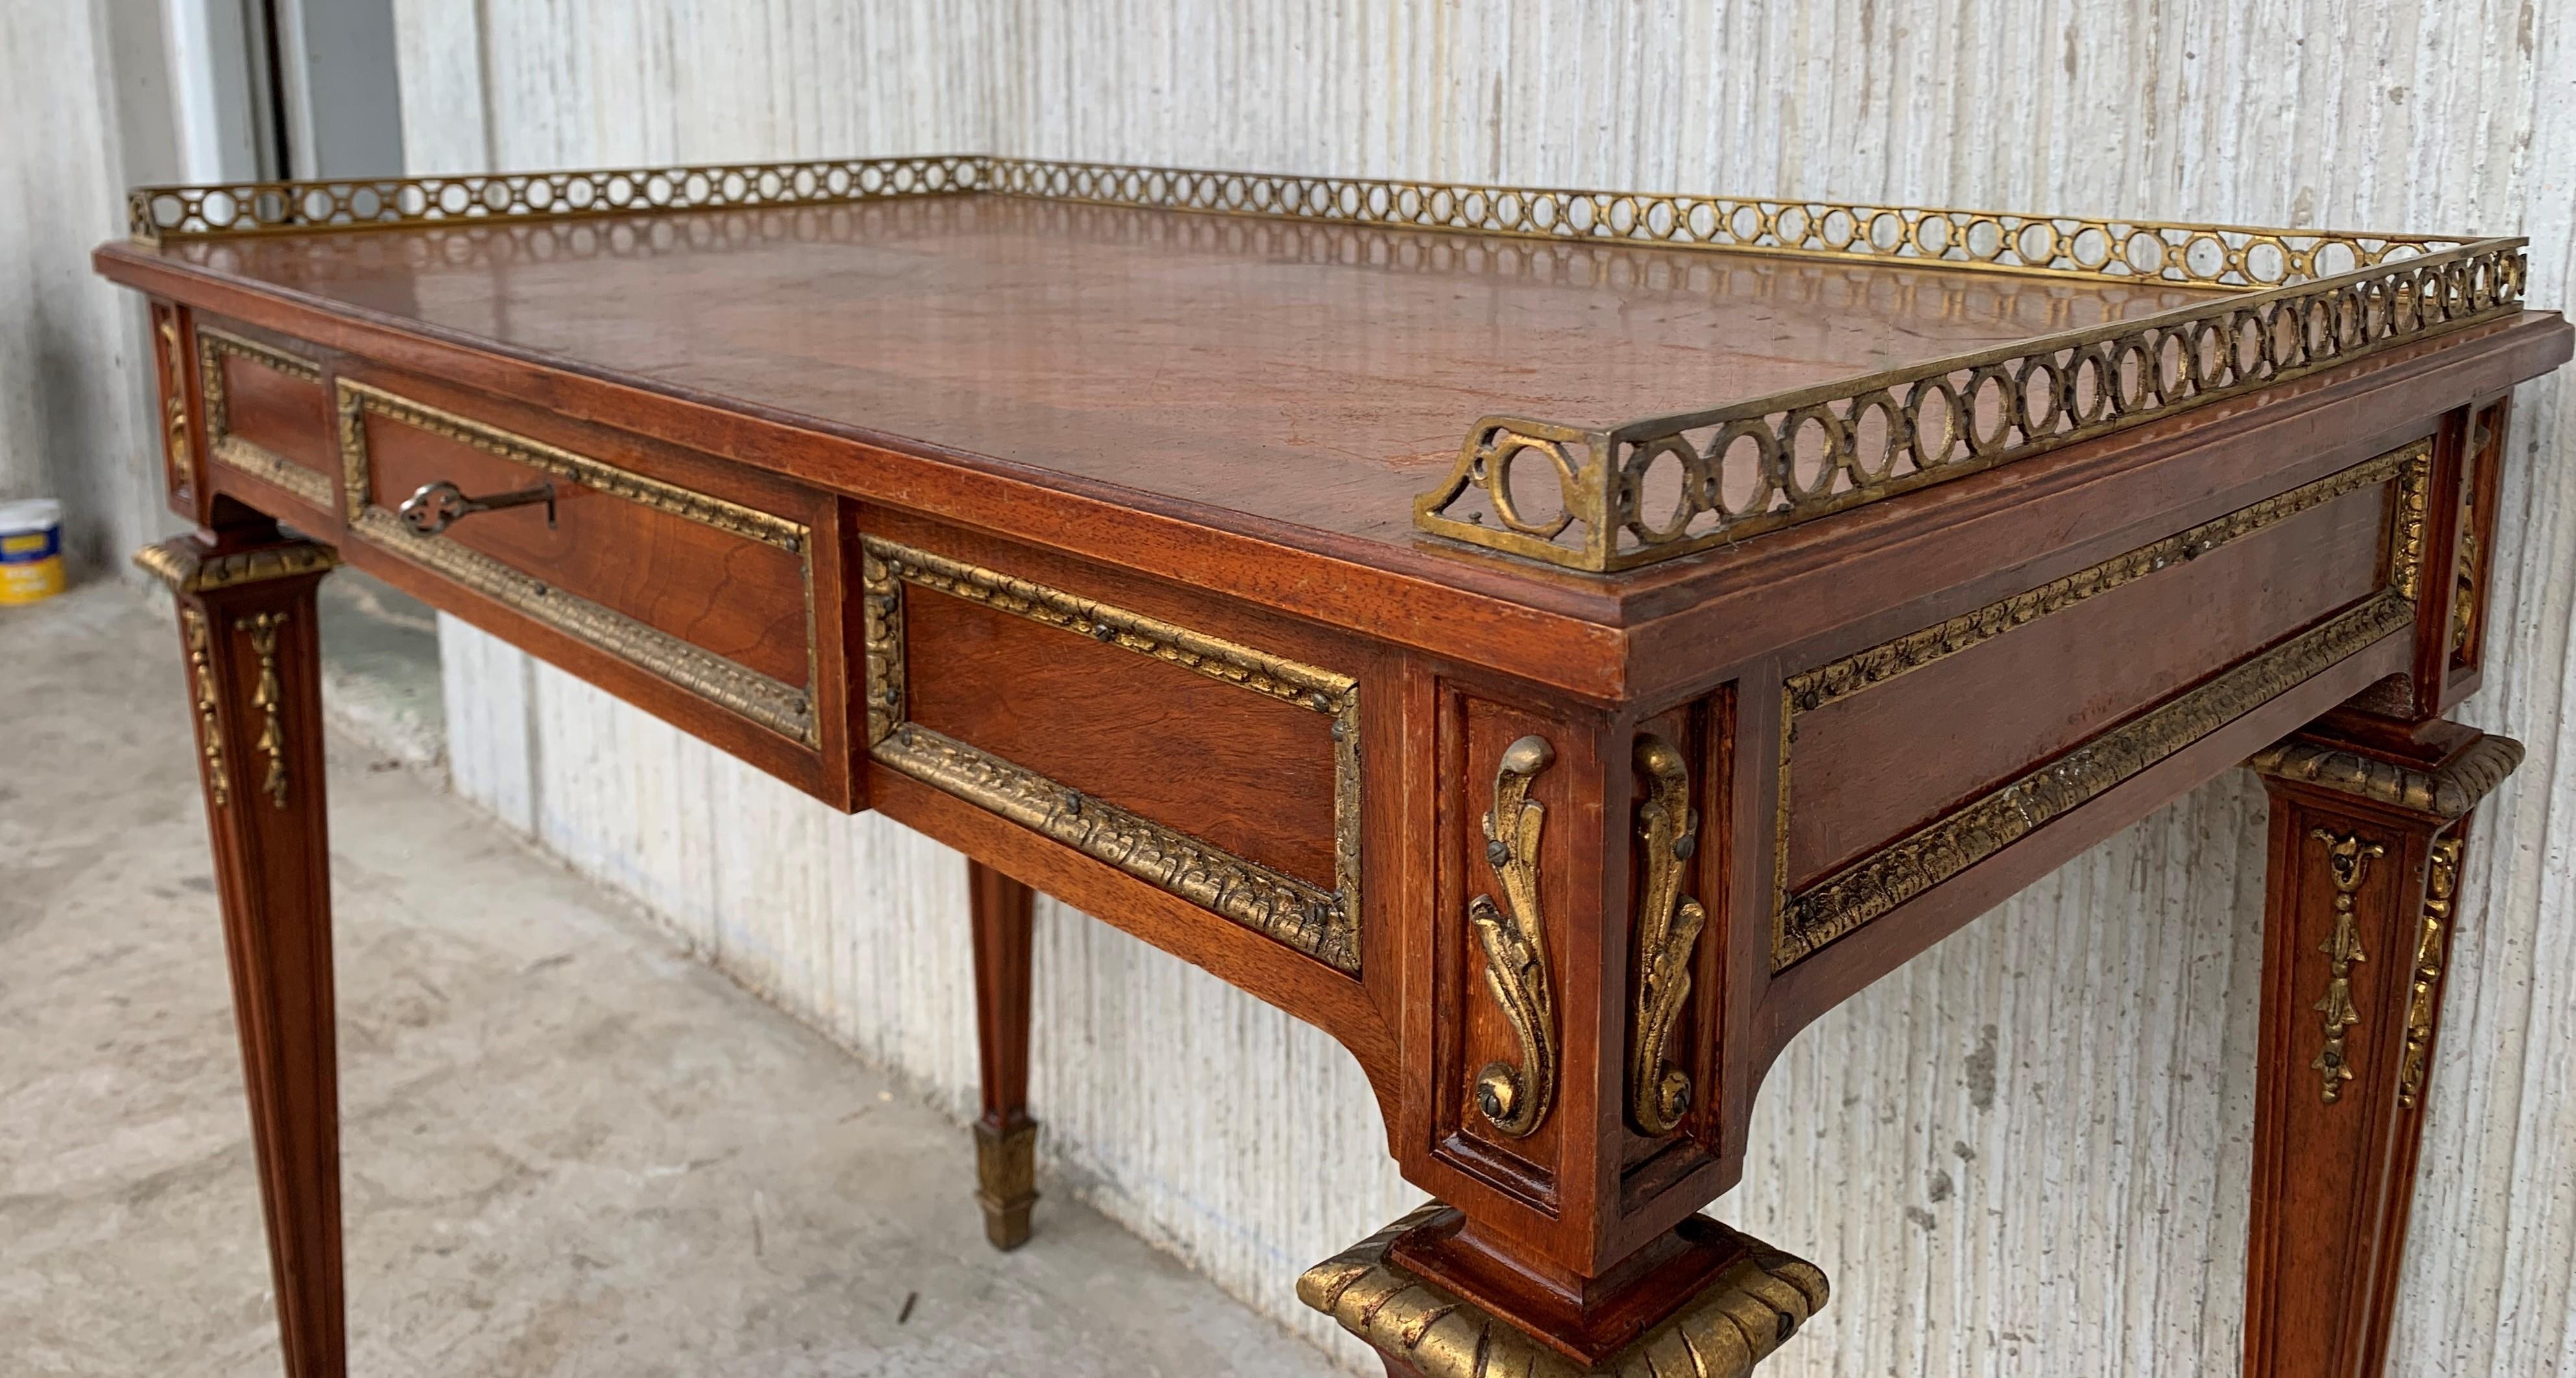 Cette importante table à écrire est d'après Jean-Henri HENRY, peut-être le plus important fabricant de meubles travaillant à Paris sous le règne de Louis XVI. Le bureau présente donc une histoire curieuse : il s'agit d'un bureau de style nettement